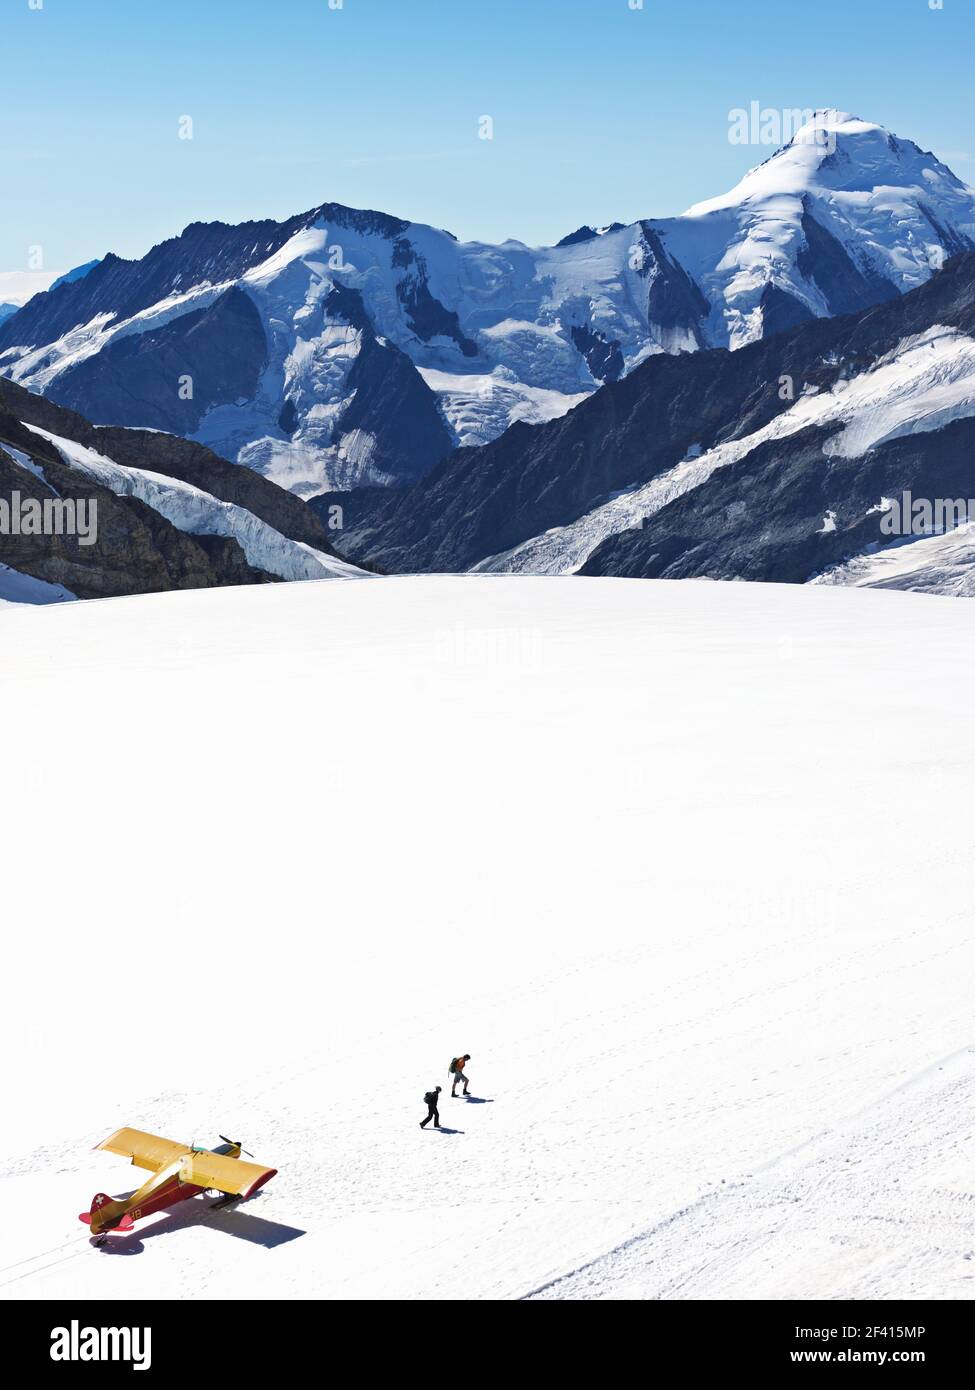 Schweiz Jungfraujoch-Top of Europe. Flugzeug auf Gletscher mit Bergen im Hintergrund und zwei Personen zu Fuß entfernt. Der Große Aletschgletscher, Stockfoto